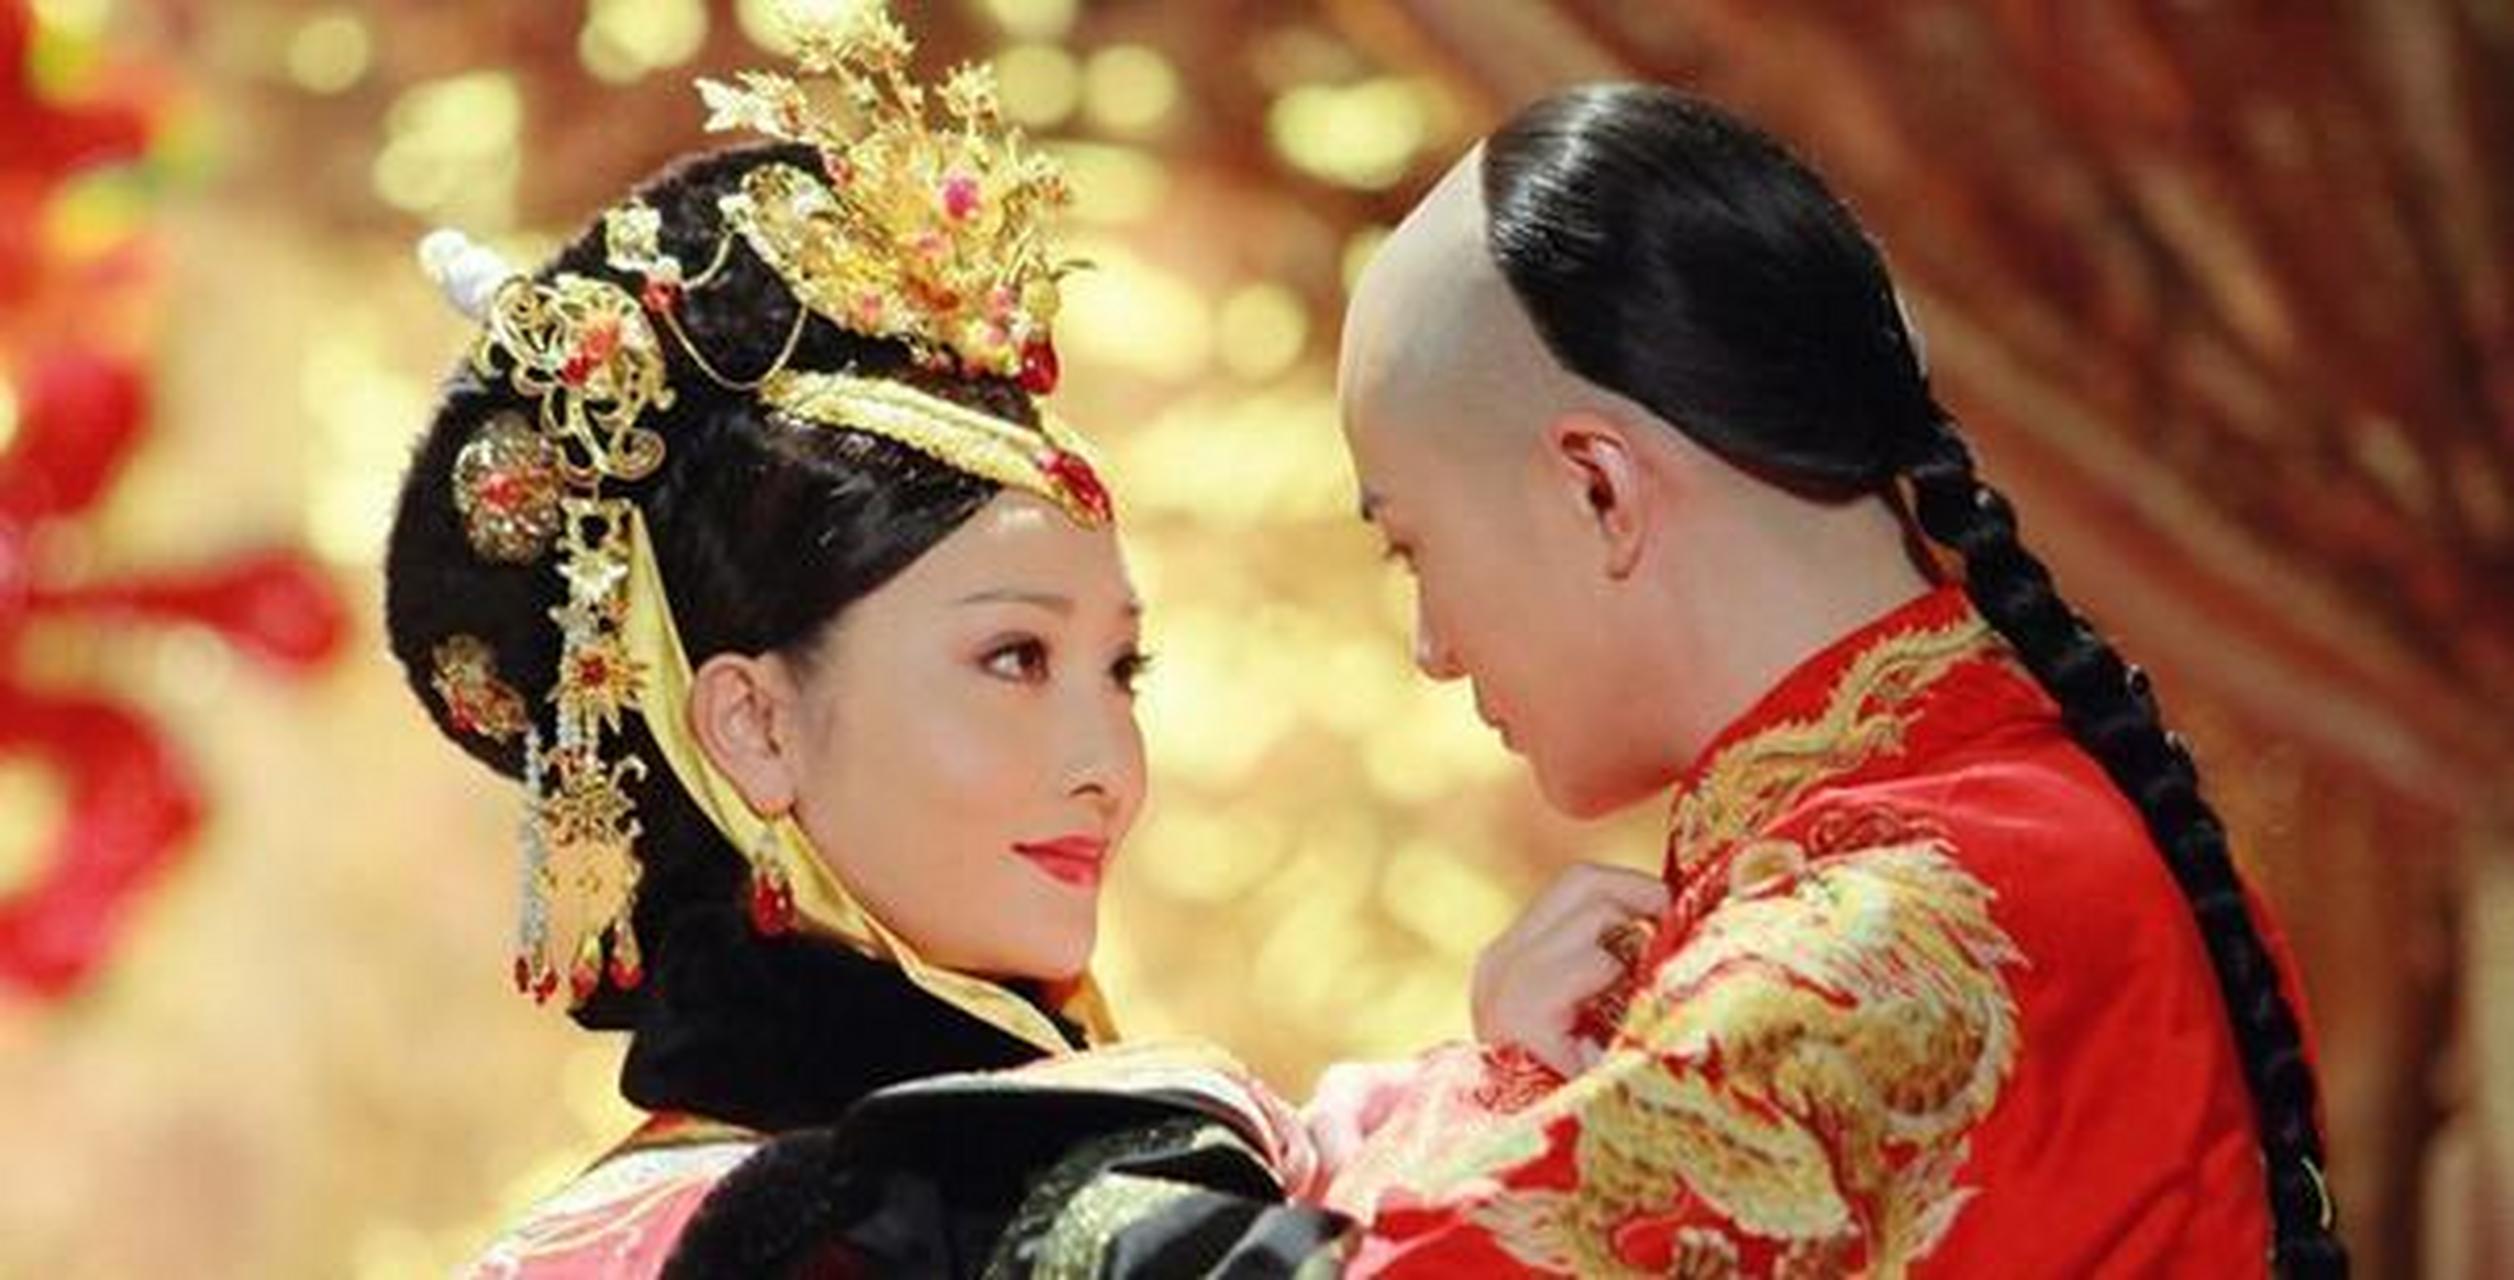 清朝唯一在乾清宫停灵的皇后,11岁嫁人,康熙为了她不惜违反祖制